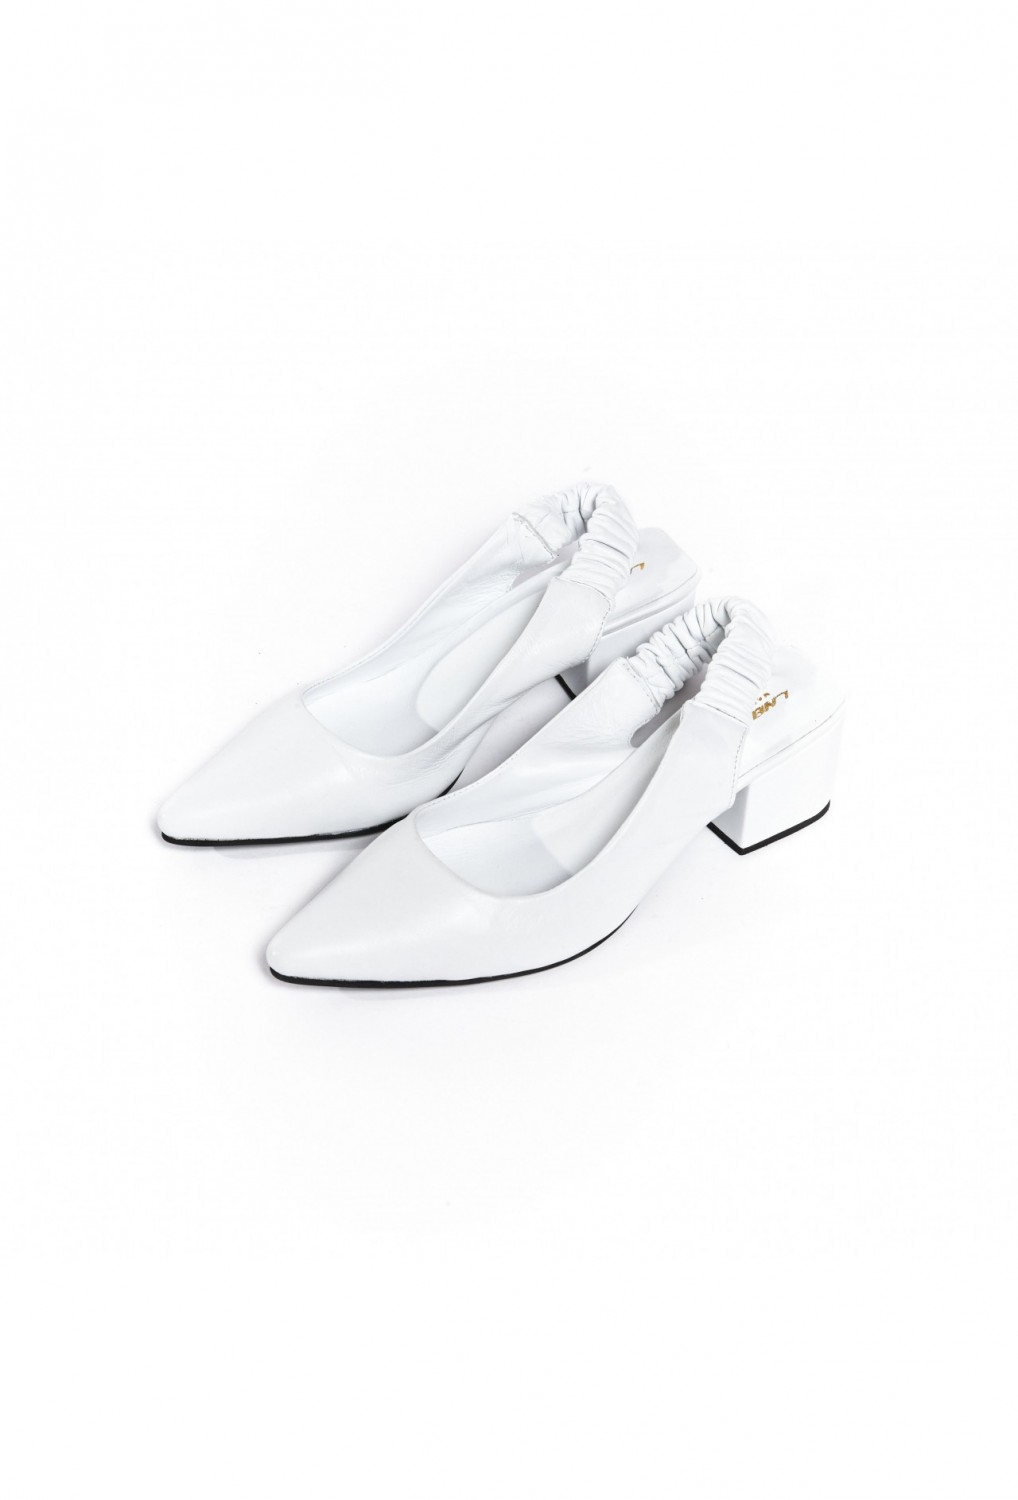 Мы нашли идеальную летнюю обувь: белые босоножки как у Рози Хантингтон-Уайтли